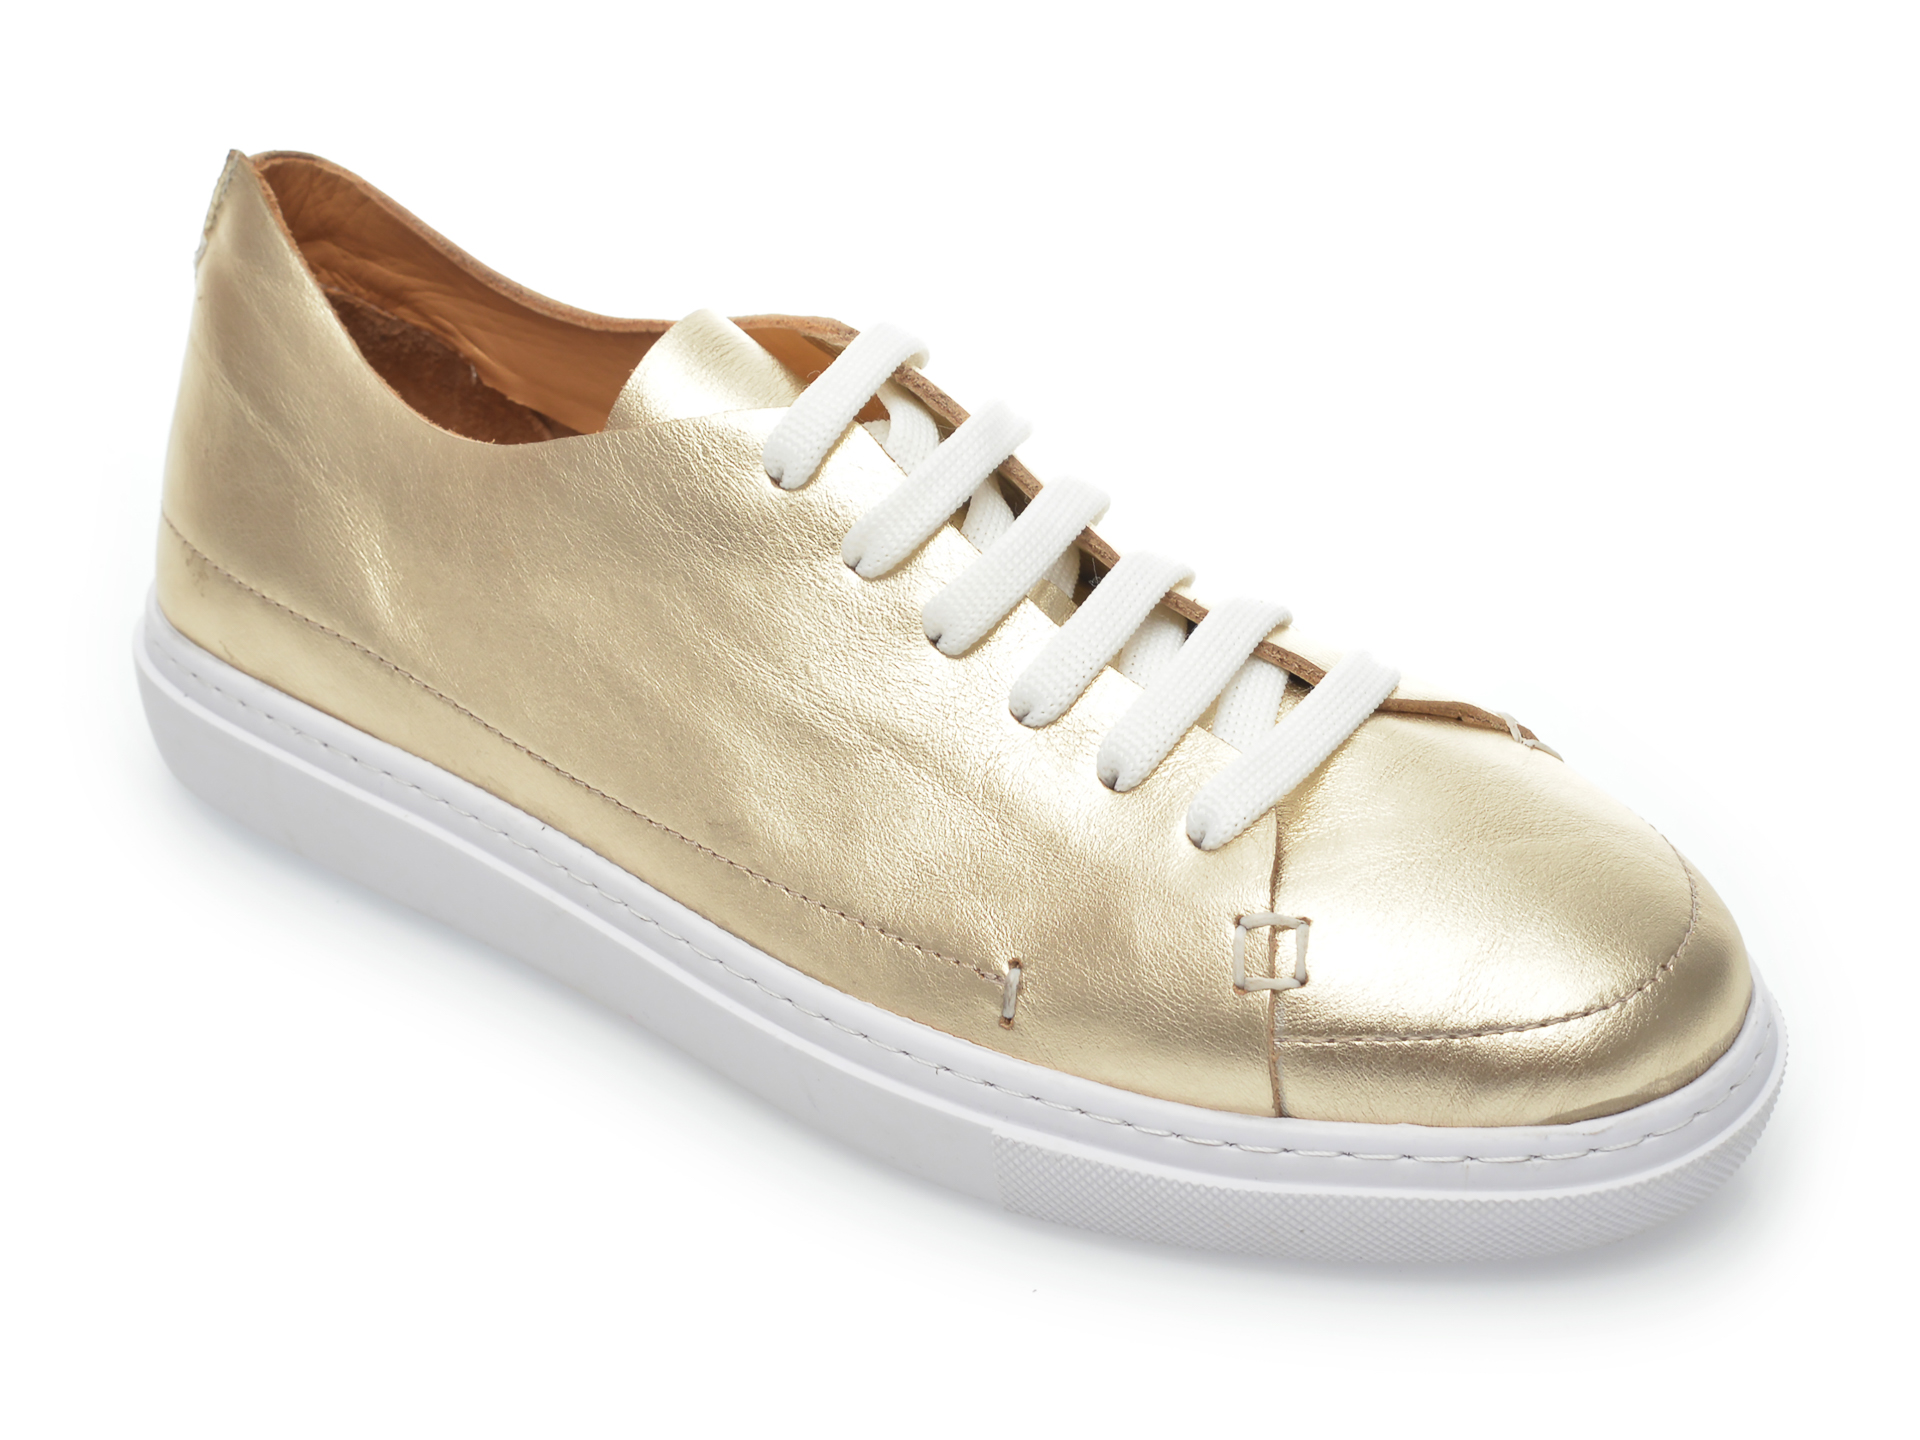 Pantofi FLAVIA PASSINI aurii, 60043, din piele naturala imagine Black Friday 2021